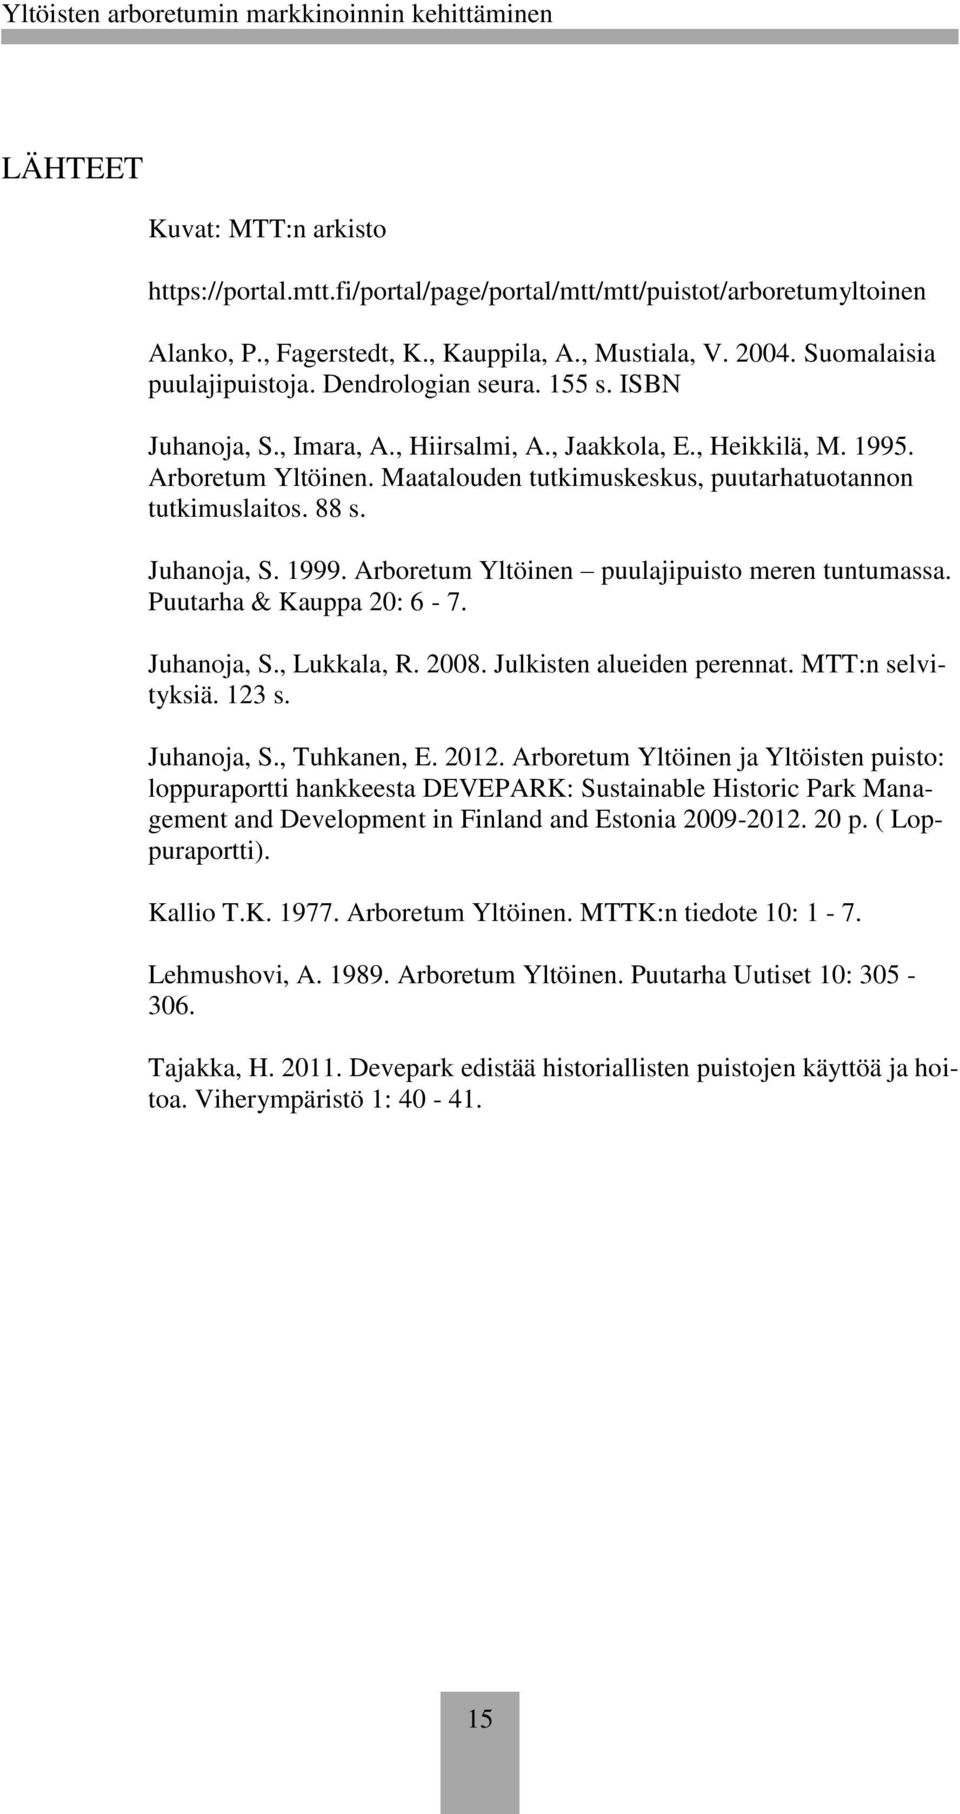 Juhanoja, S. 1999. Arboretum Yltöinen puulajipuisto meren tuntumassa. Puutarha & Kauppa 20: 6-7. Juhanoja, S., Lukkala, R. 2008. Julkisten alueiden perennat. MTT:n selvityksiä. 123 s. Juhanoja, S., Tuhkanen, E.